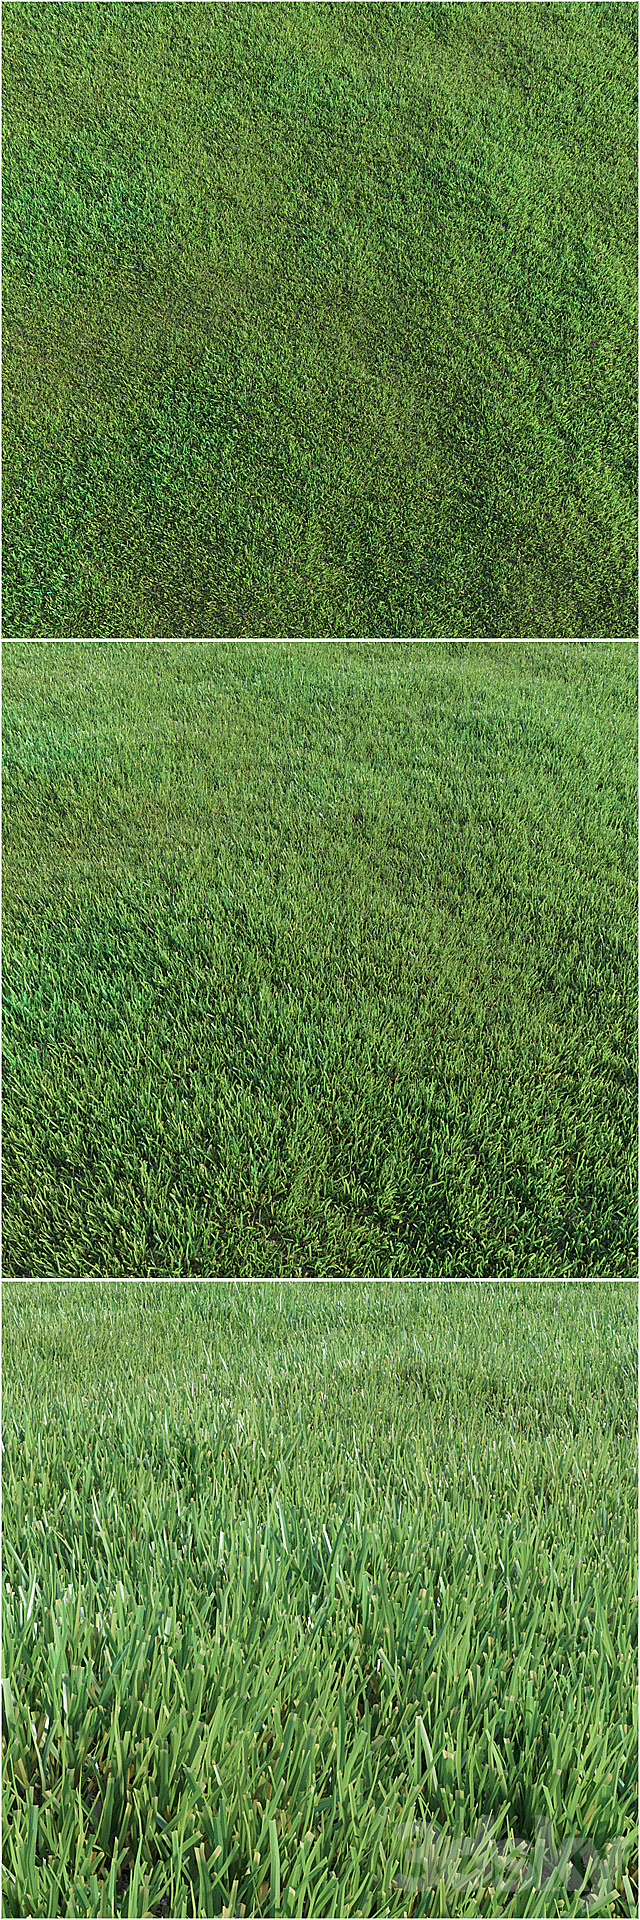 Lawn grass 3DSMax File - thumbnail 2